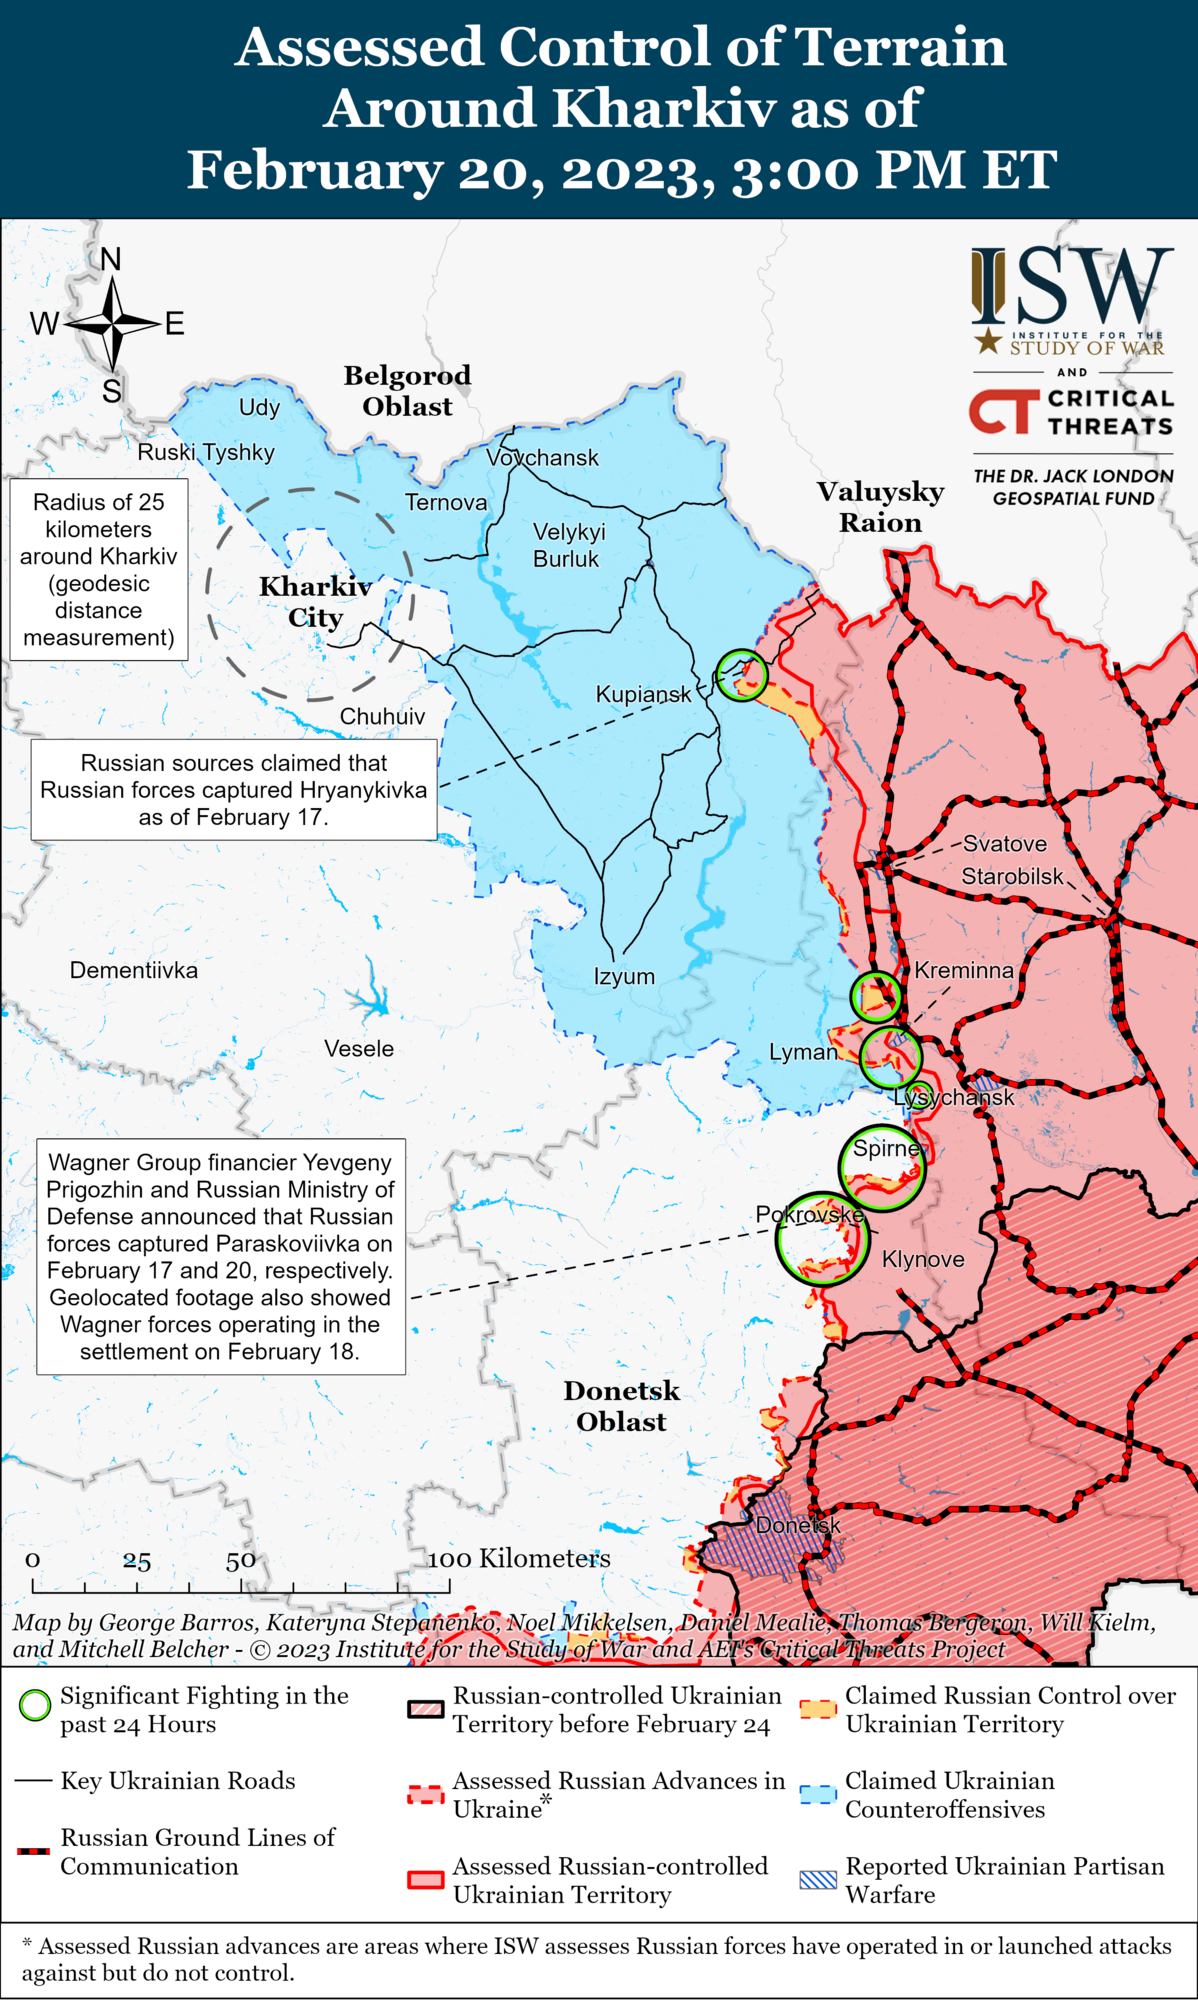 Росії не вистачає сил на фронті, Україна може захопити ініціативу: в ISW дали прогноз про хід війни 2023 року